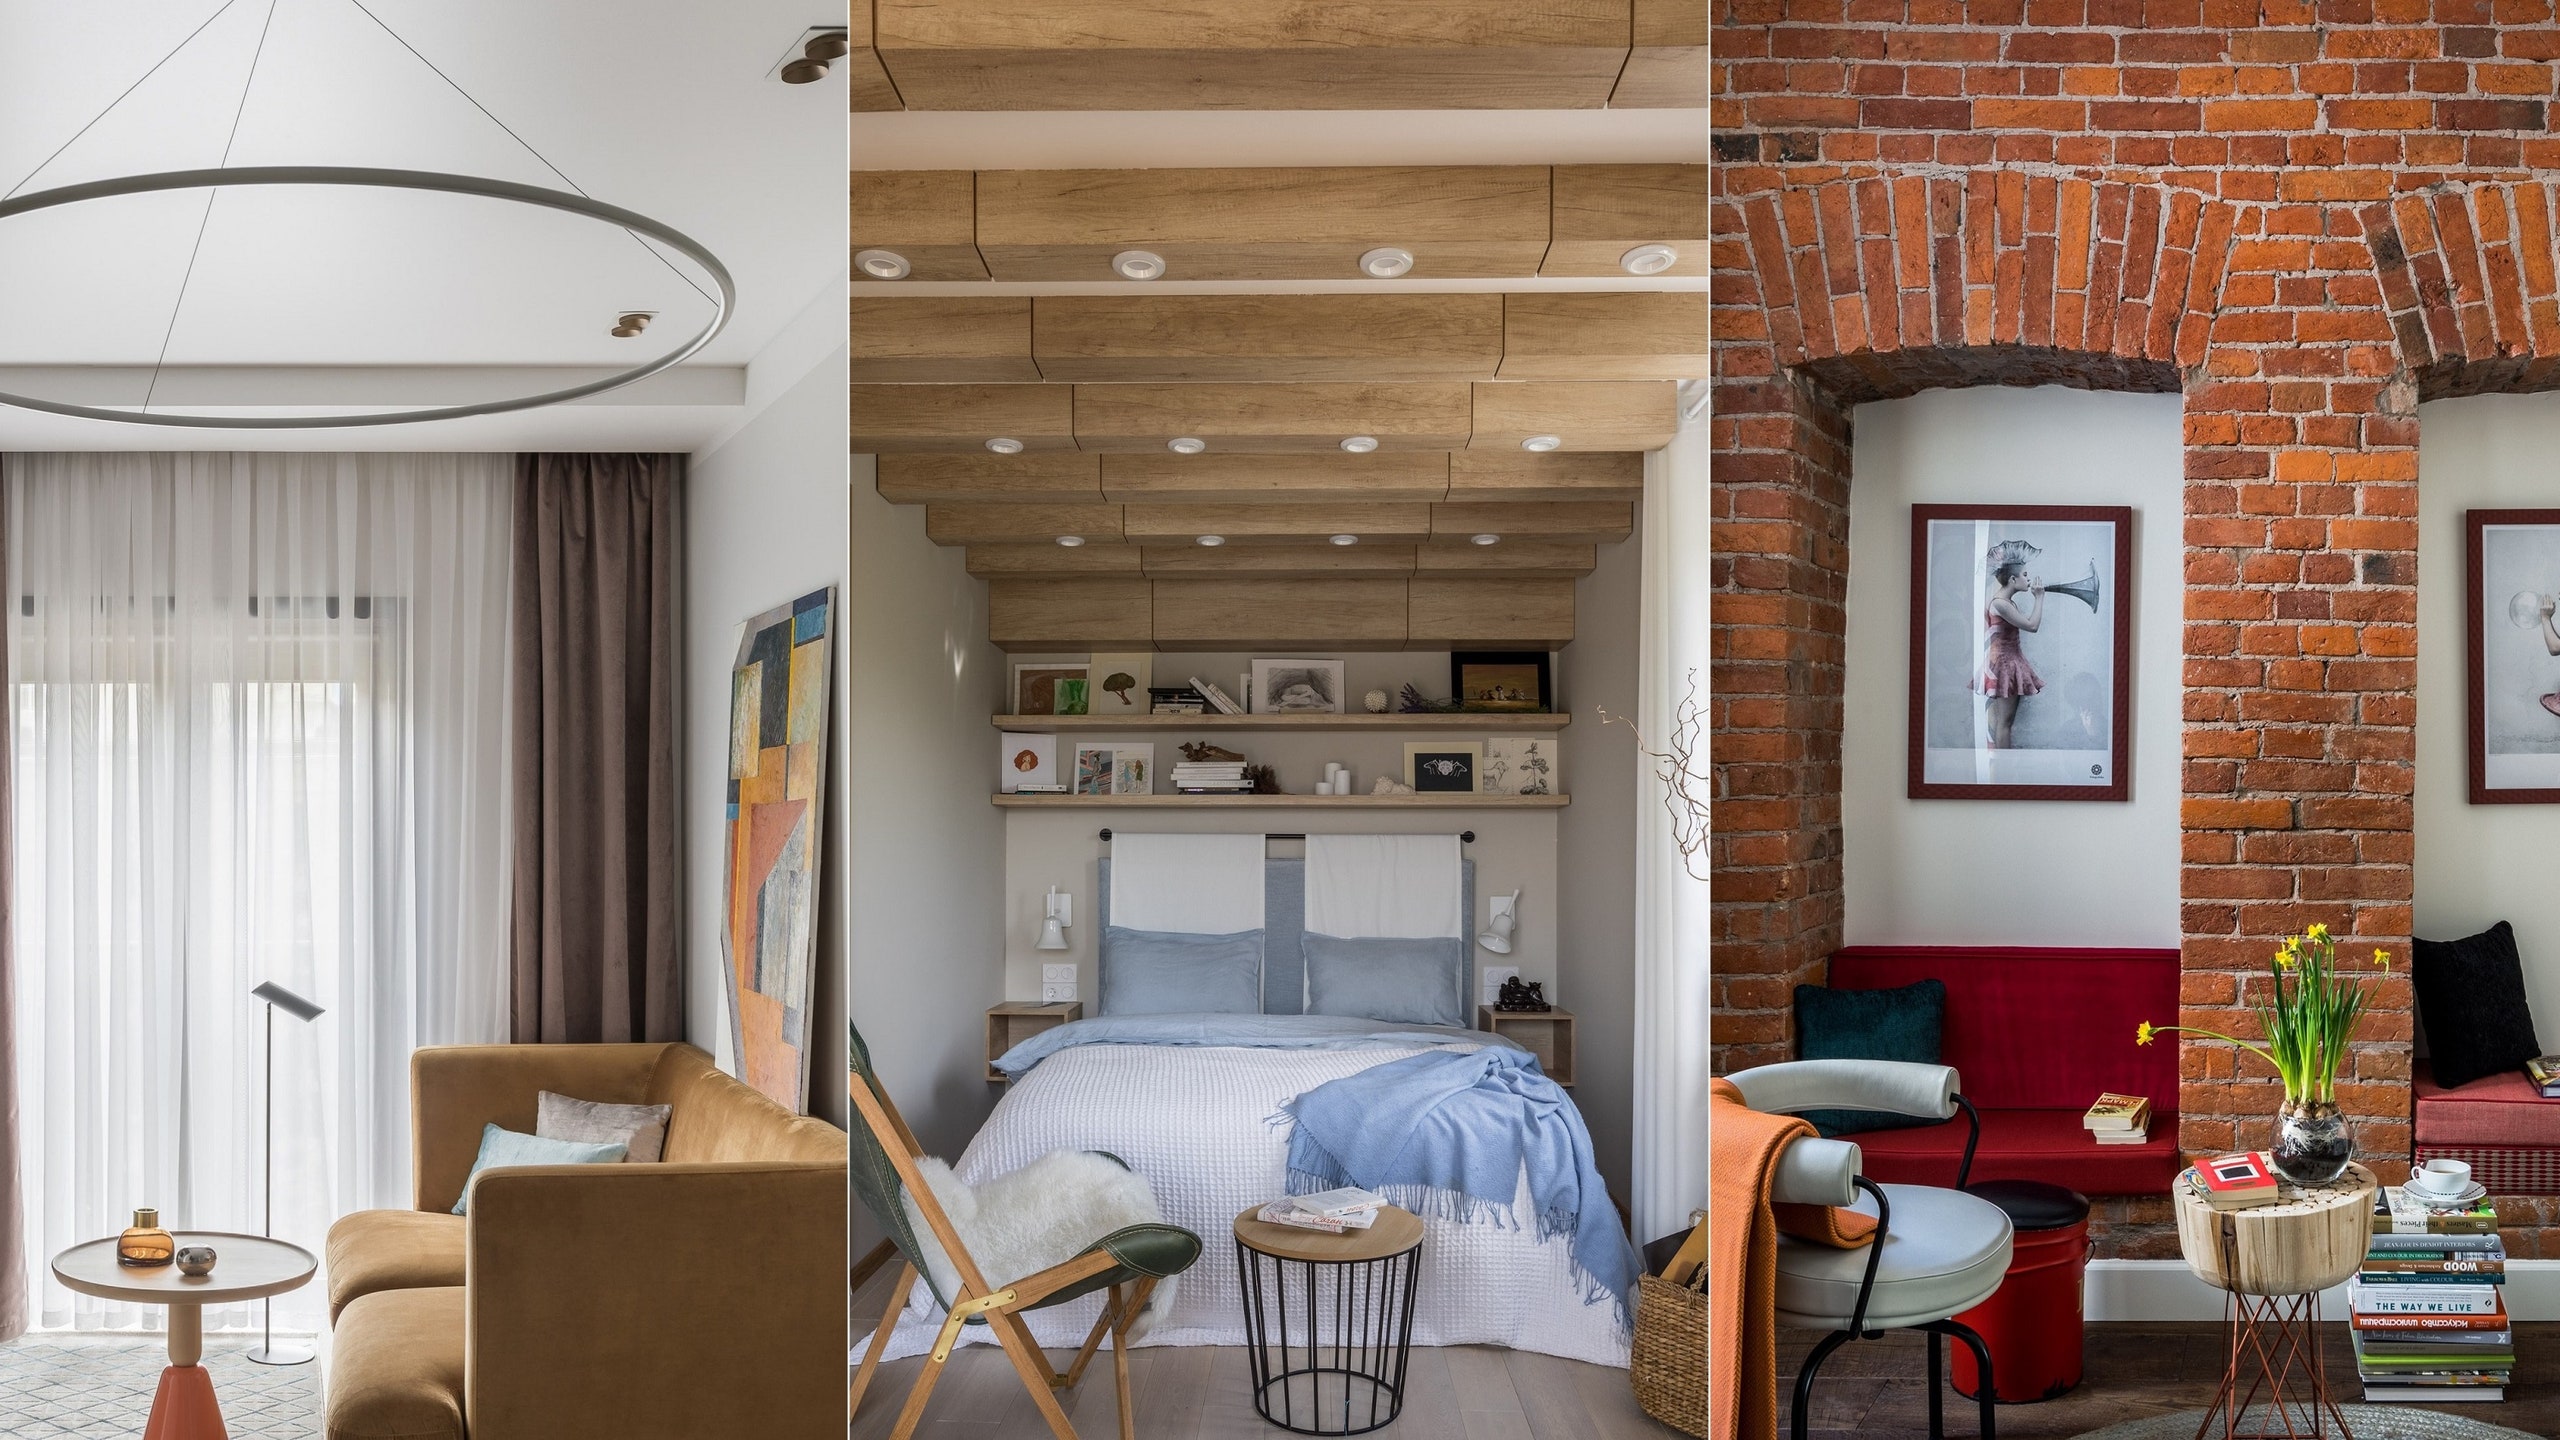 Маленькие квартиры от 28 до 35 м² семь вариантов интерьера с планами